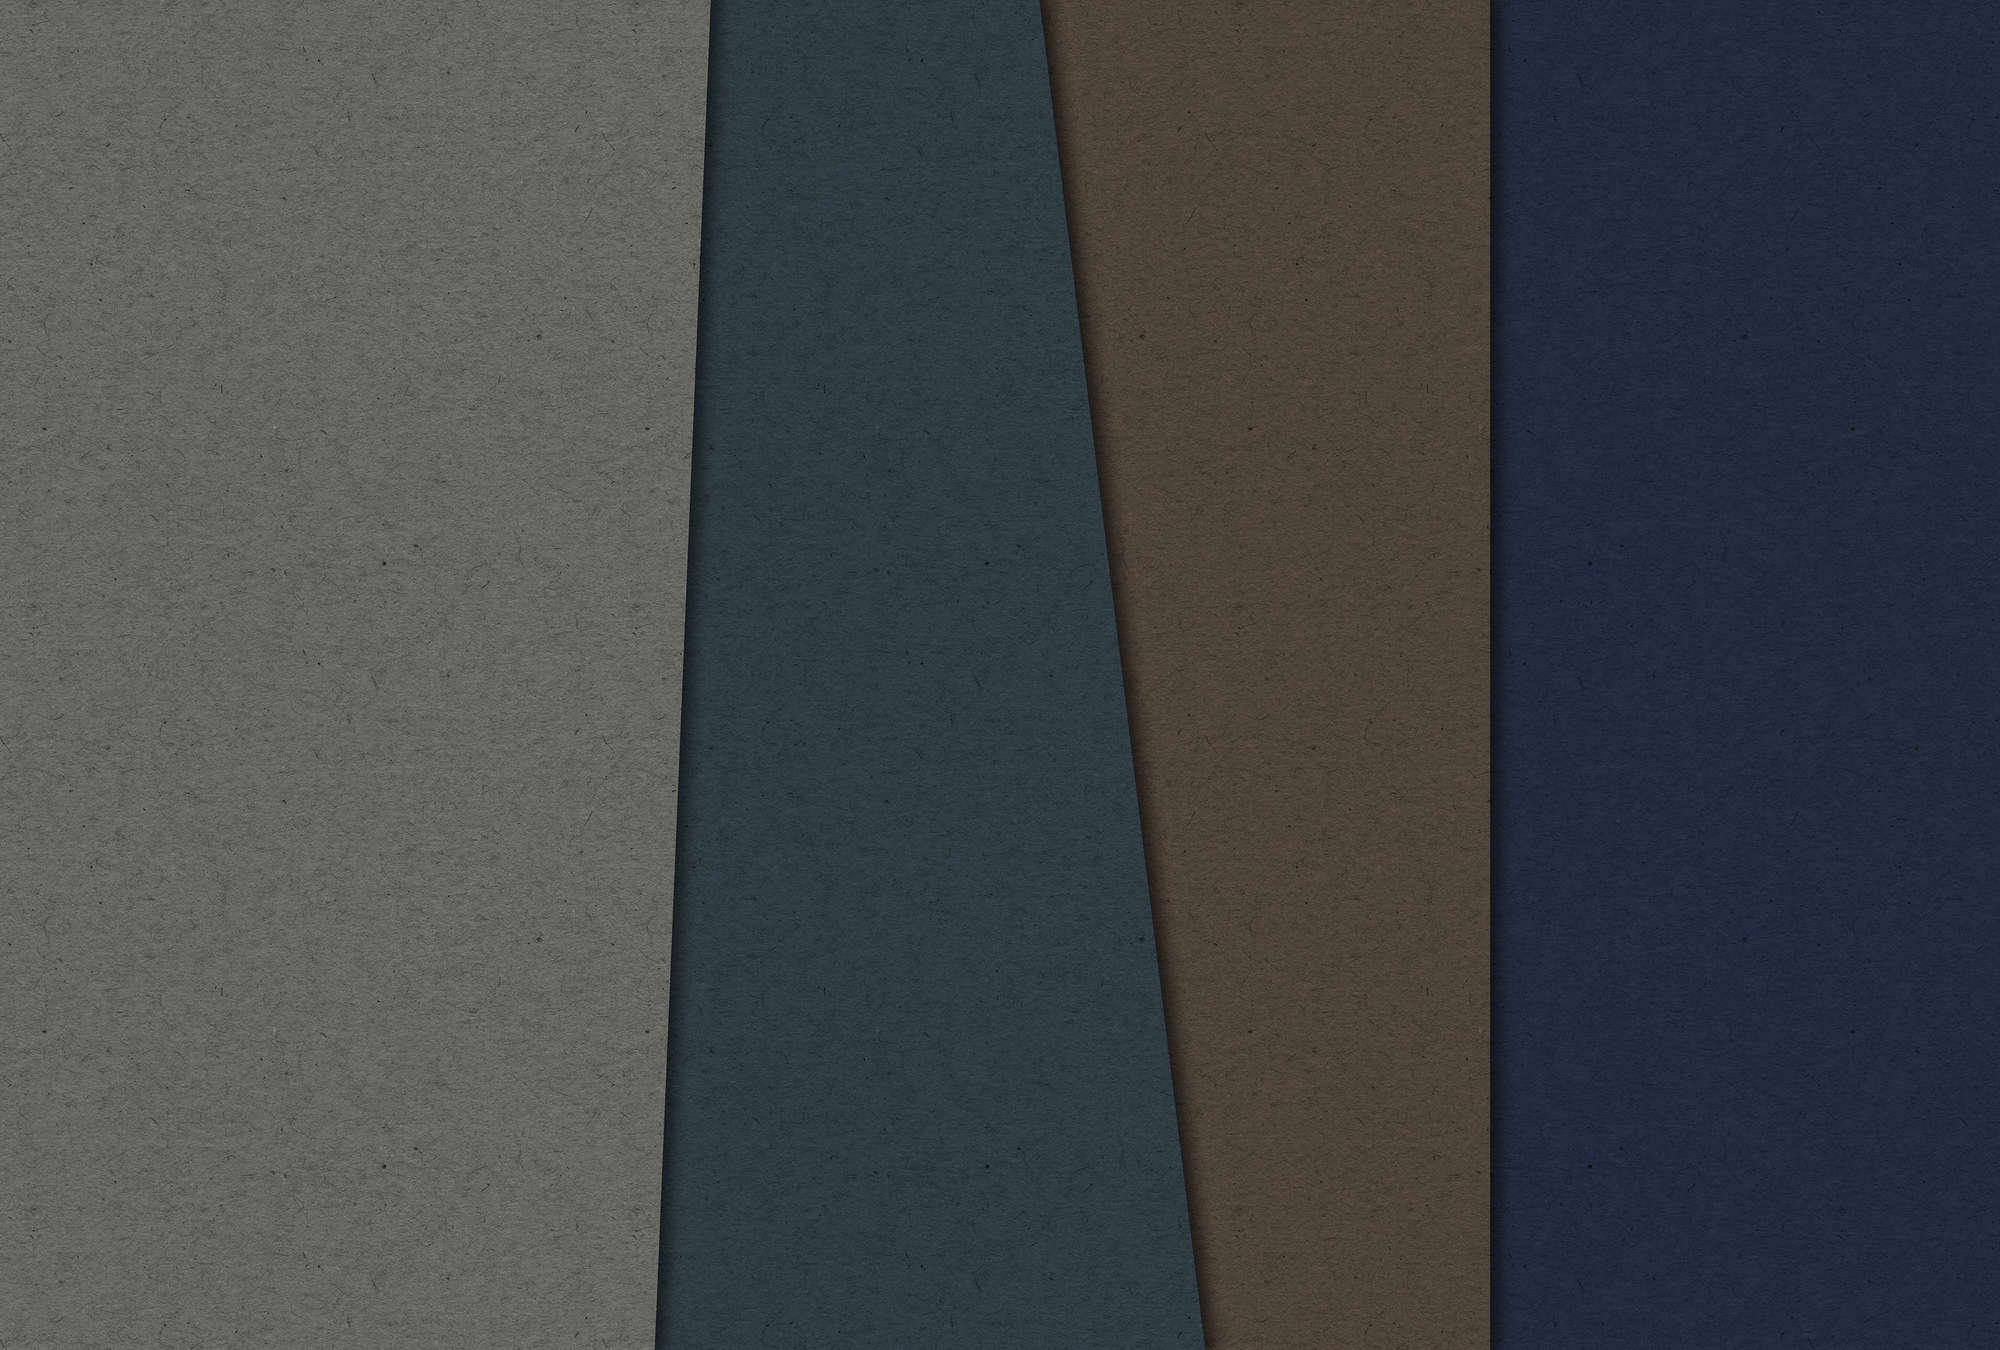             Layered Cardboard 2 - Fototapete in Pappe Struktur mit dunklen Farbfeldern – Blau, Braun | Struktur Vlies
        